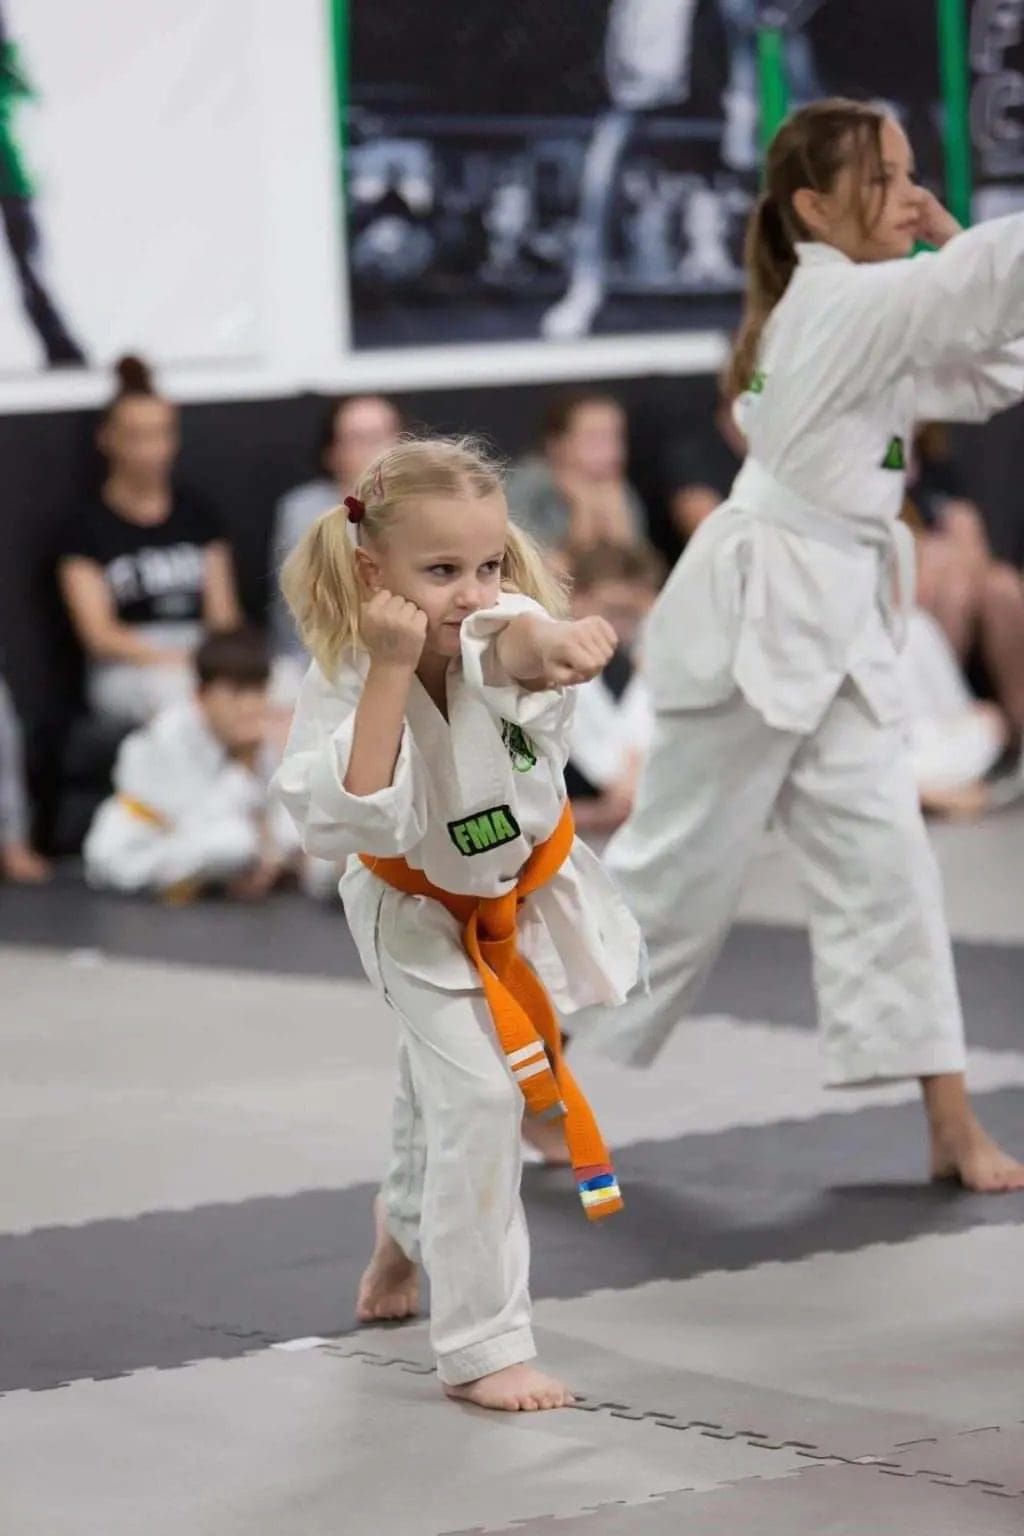 Kids self-defense classes